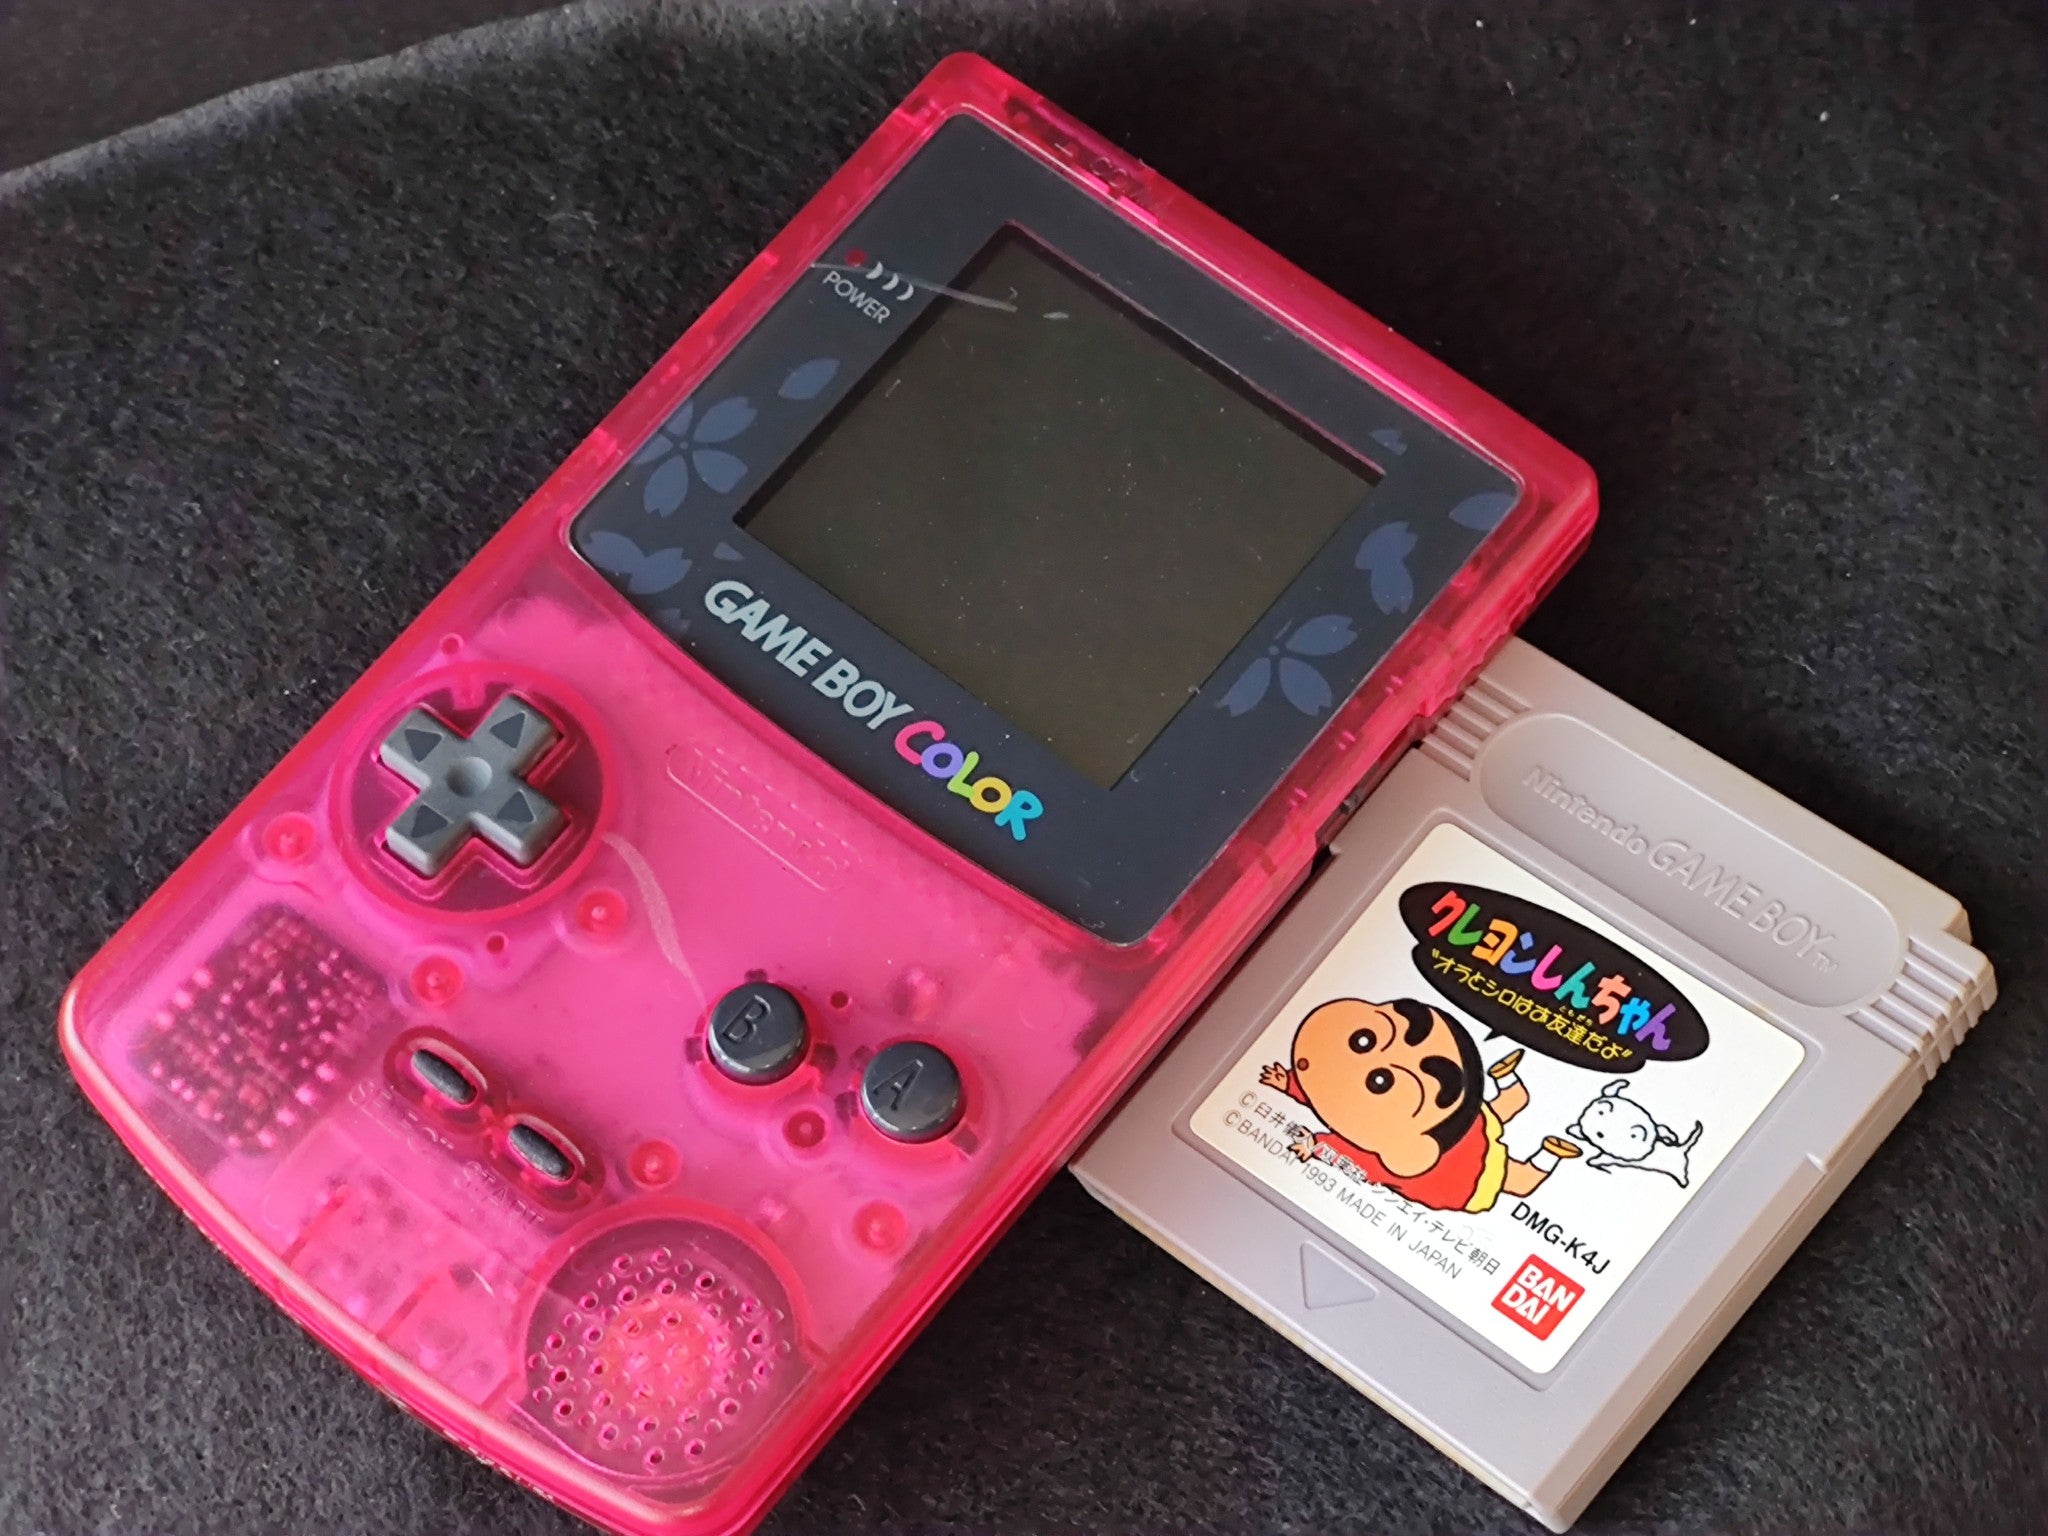 Nintendo Gameboy Color Sakura Taisen Sakura Wars Limited edition conso